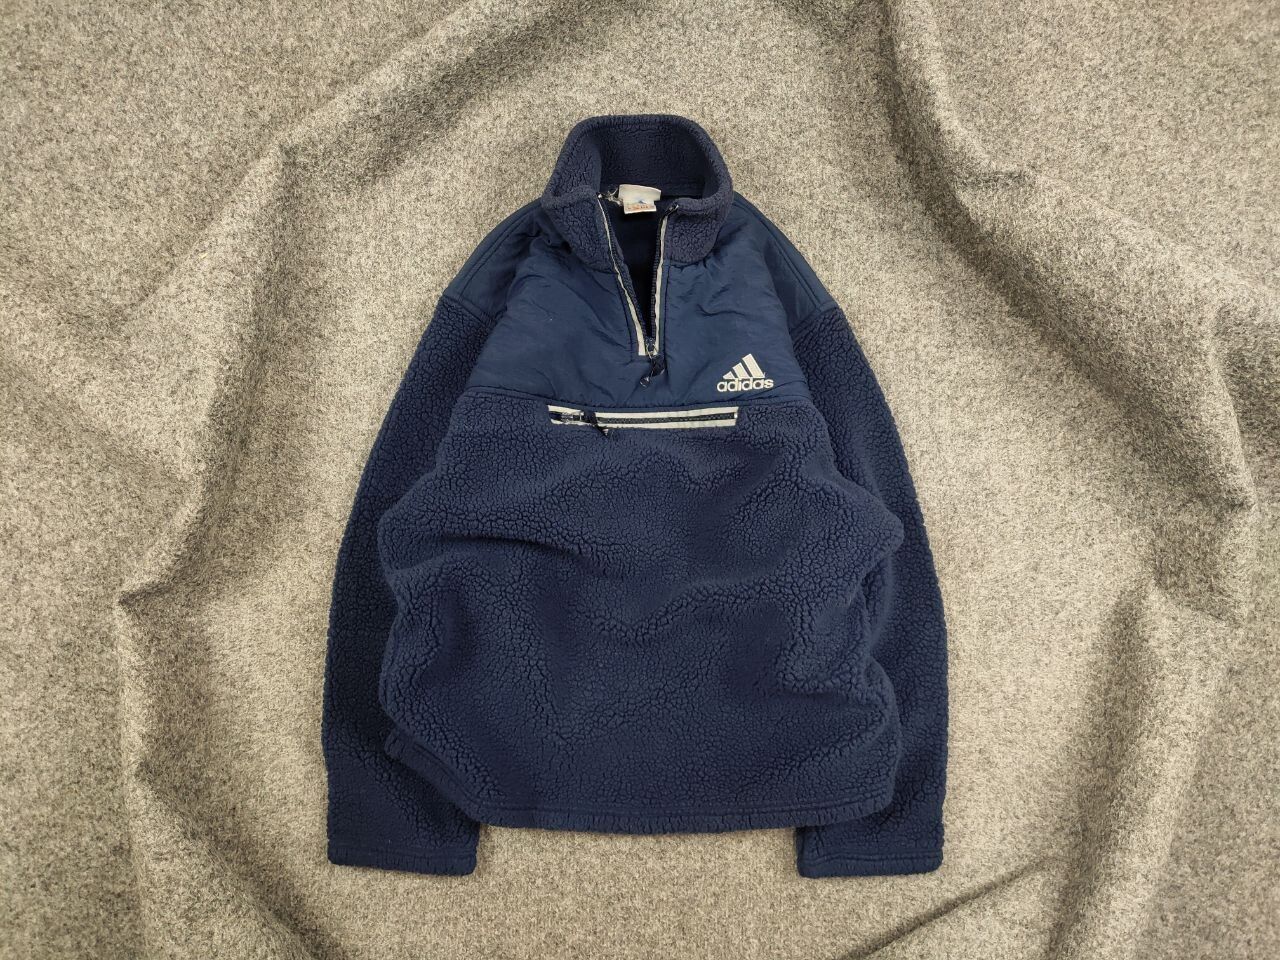 Adidas Vintage 90's Adidas Teddy Fleece Dark Zip Pullover Jacket Size US M / EU 48-50 / 2 - 1 Preview